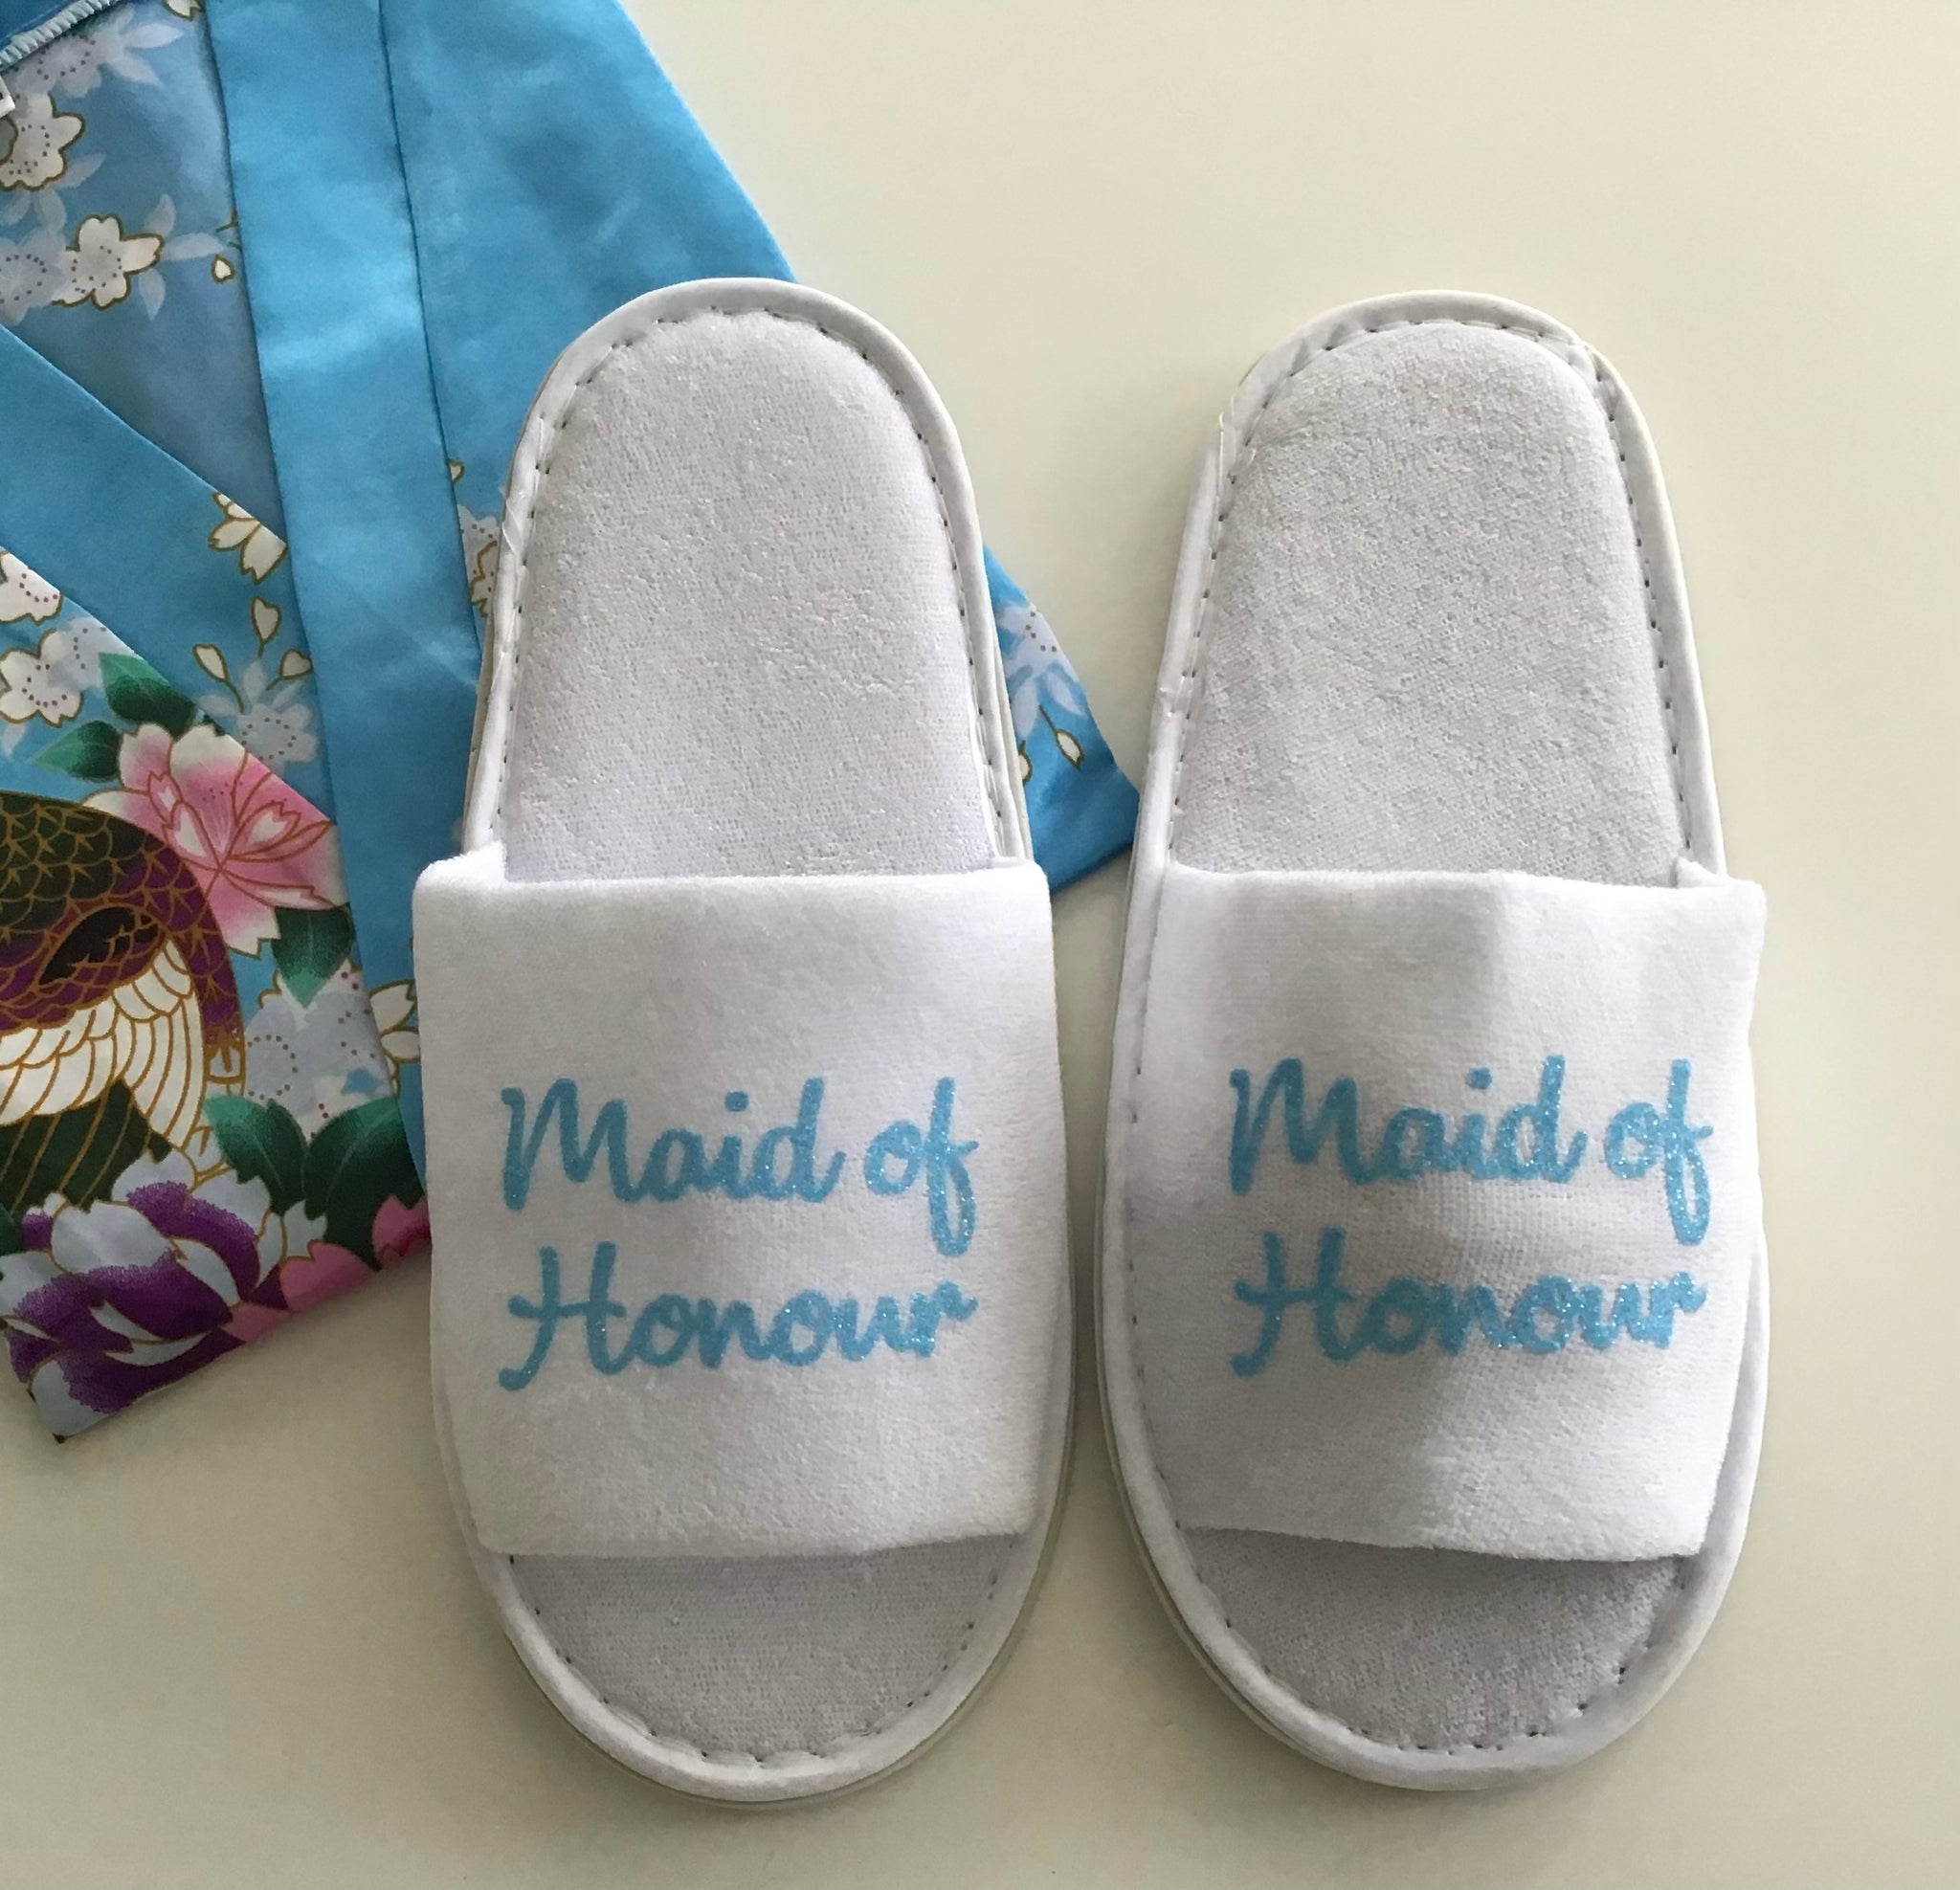 Maid of Honour Slippers - Light Blue Glitter Script, Style C Handmade